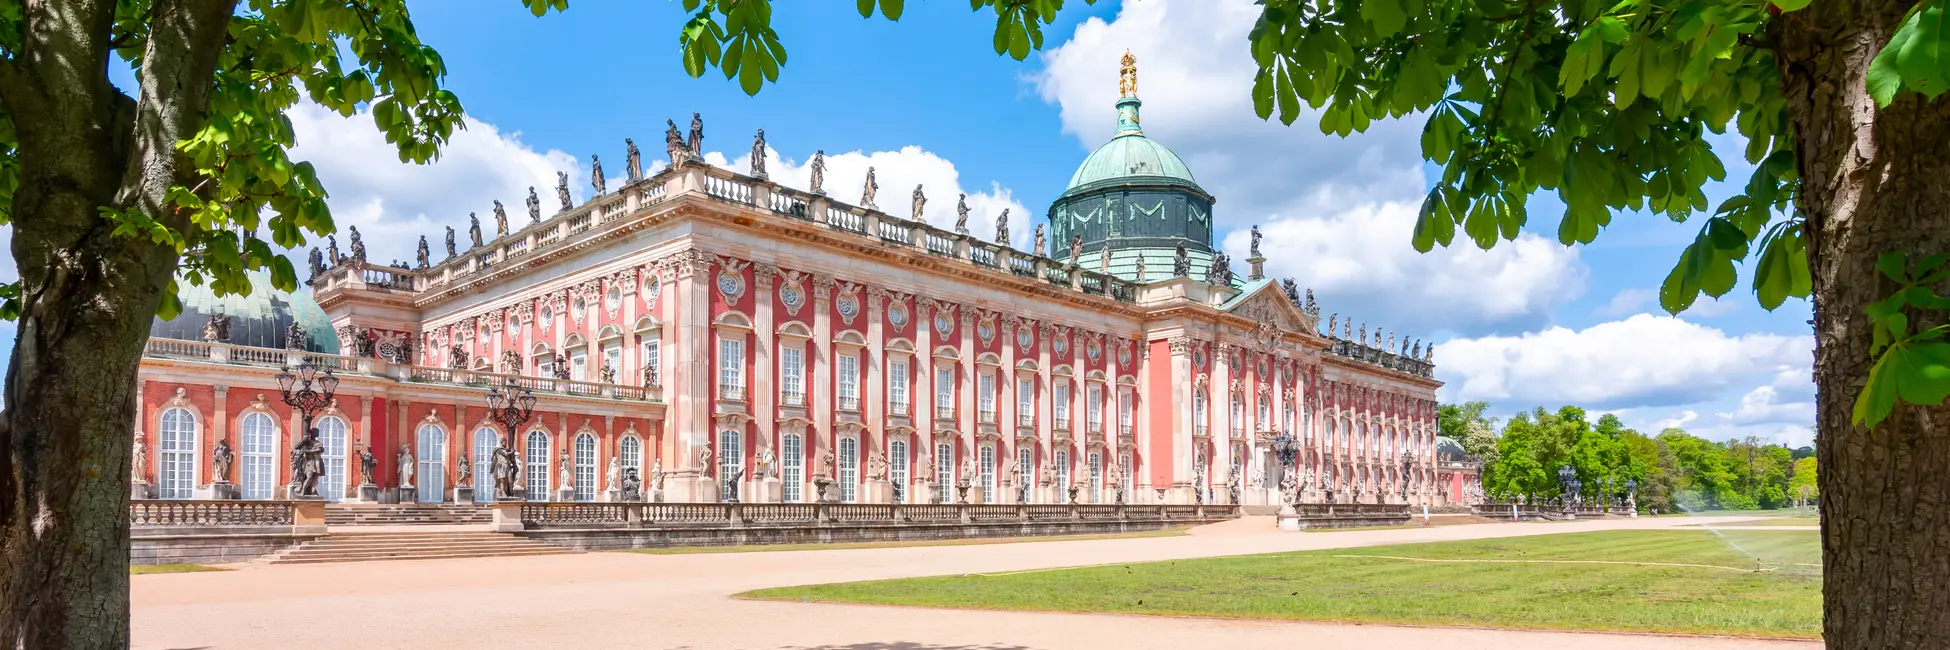 Le nouveau palais sanssoucis à Potsdam 